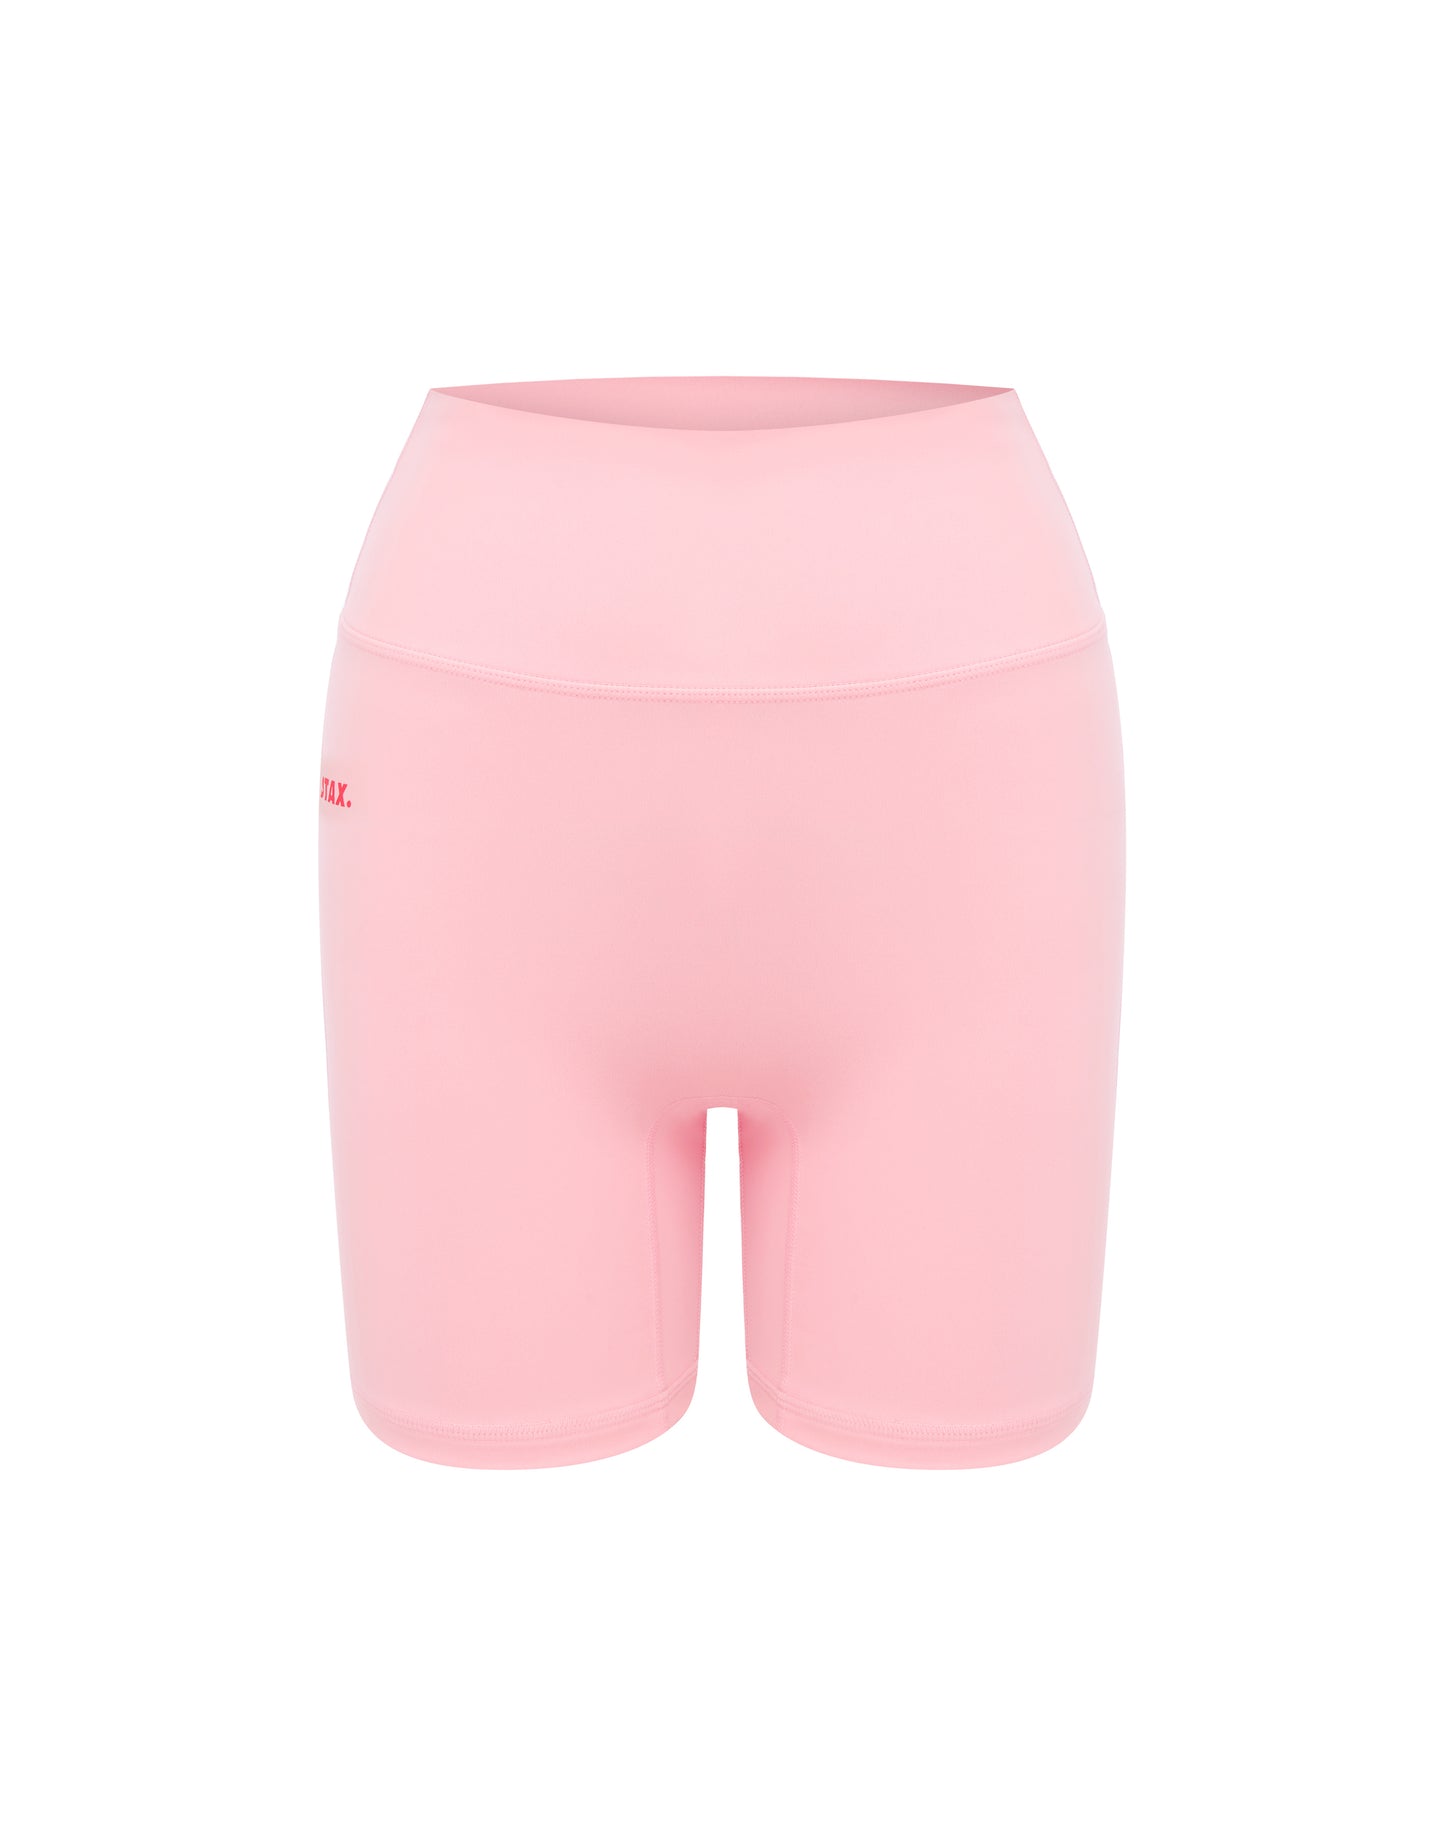 Kic Midi Bike Shorts - Light Pink